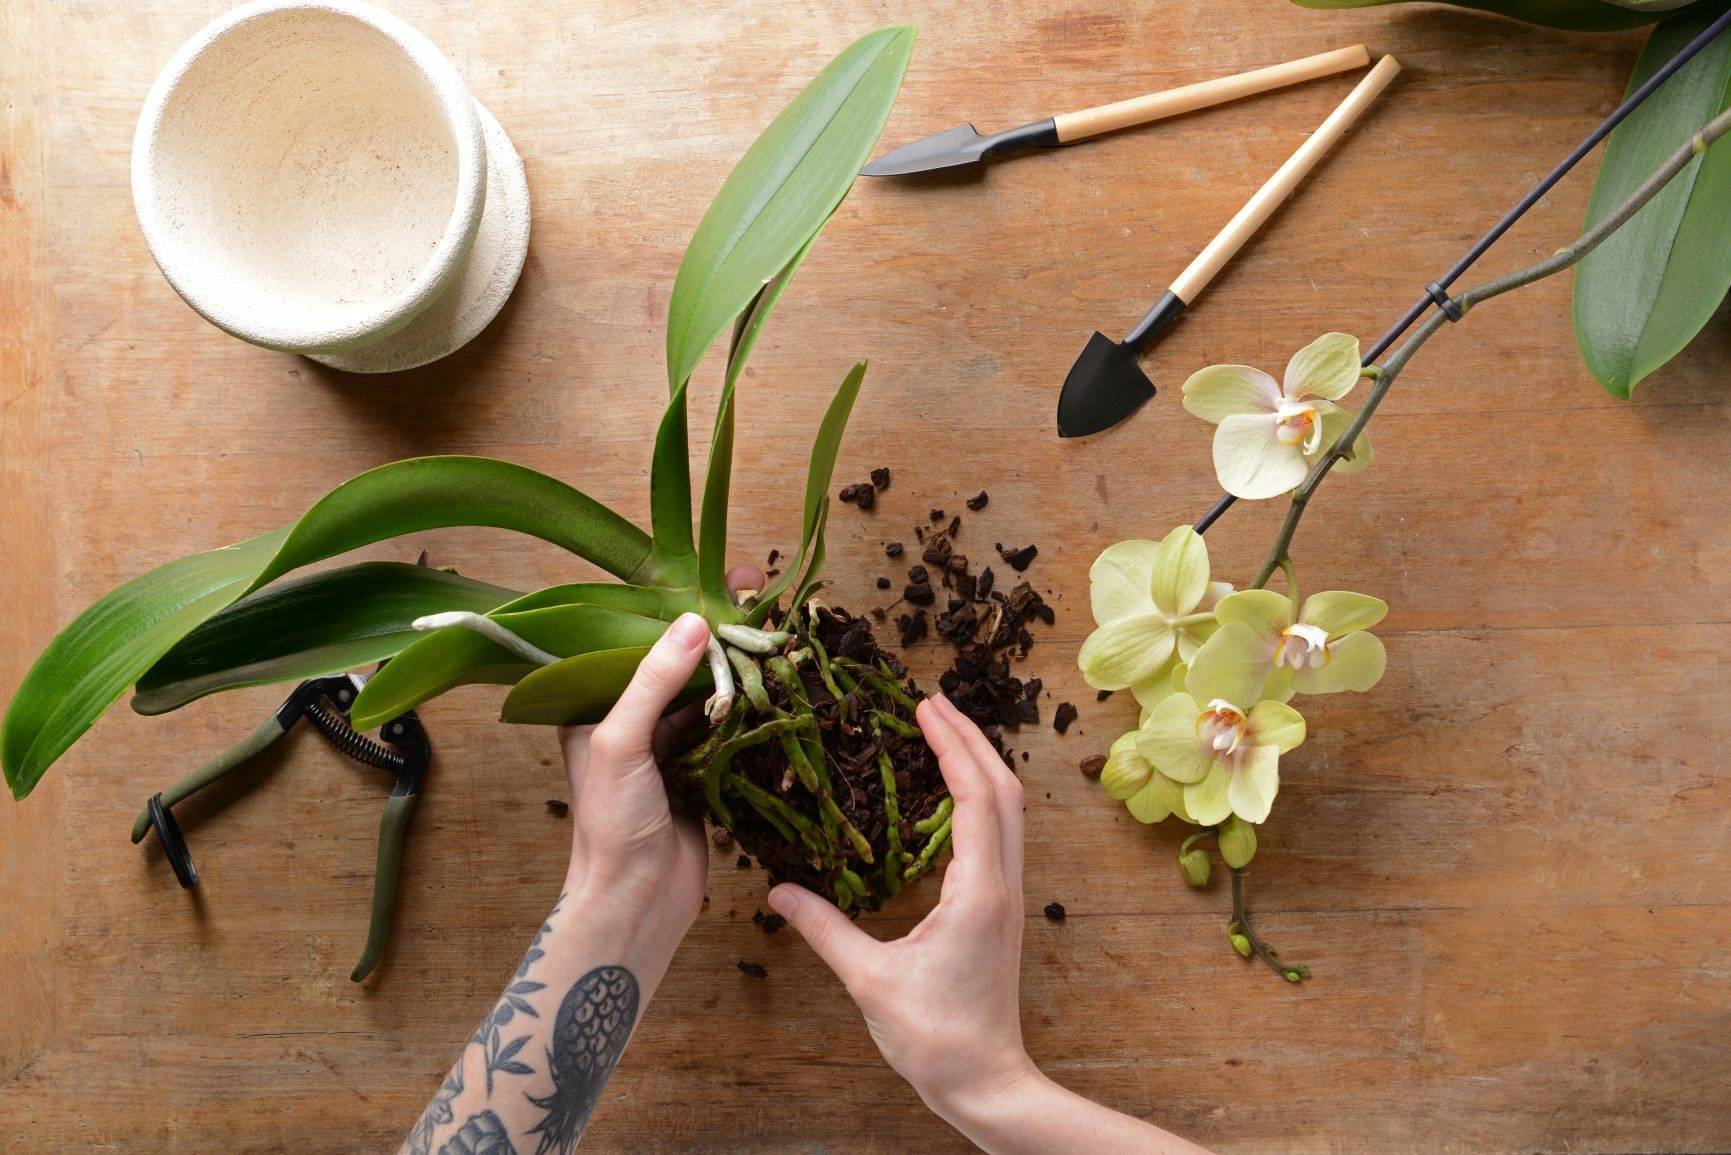 Уход за орхидеей фаленопсис мини в домашних условиях: правила содержания карликовых марок цветов после магазина и их фото, а также основные ошибки при выращивании